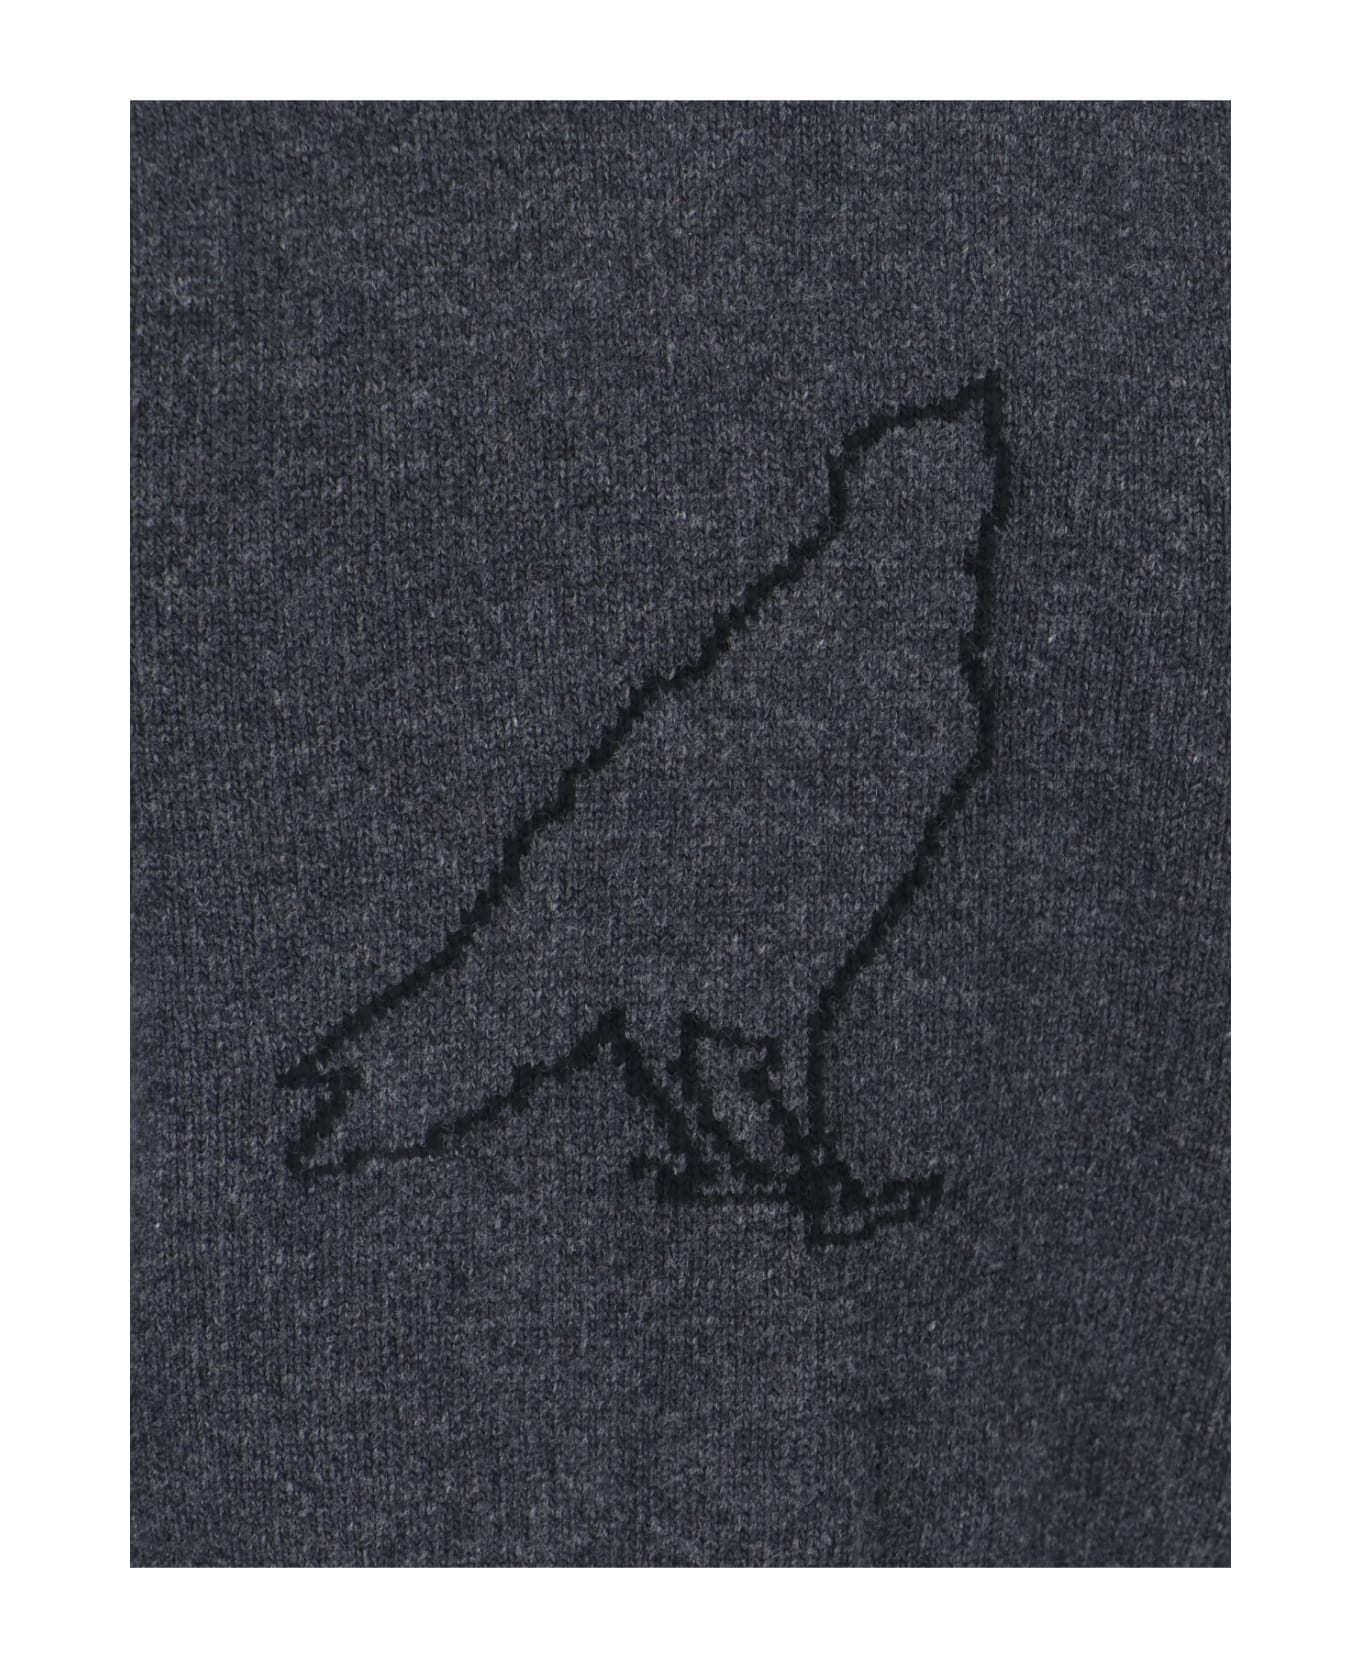 Thom Browne '4-bar' Sweater - Gray カーディガン